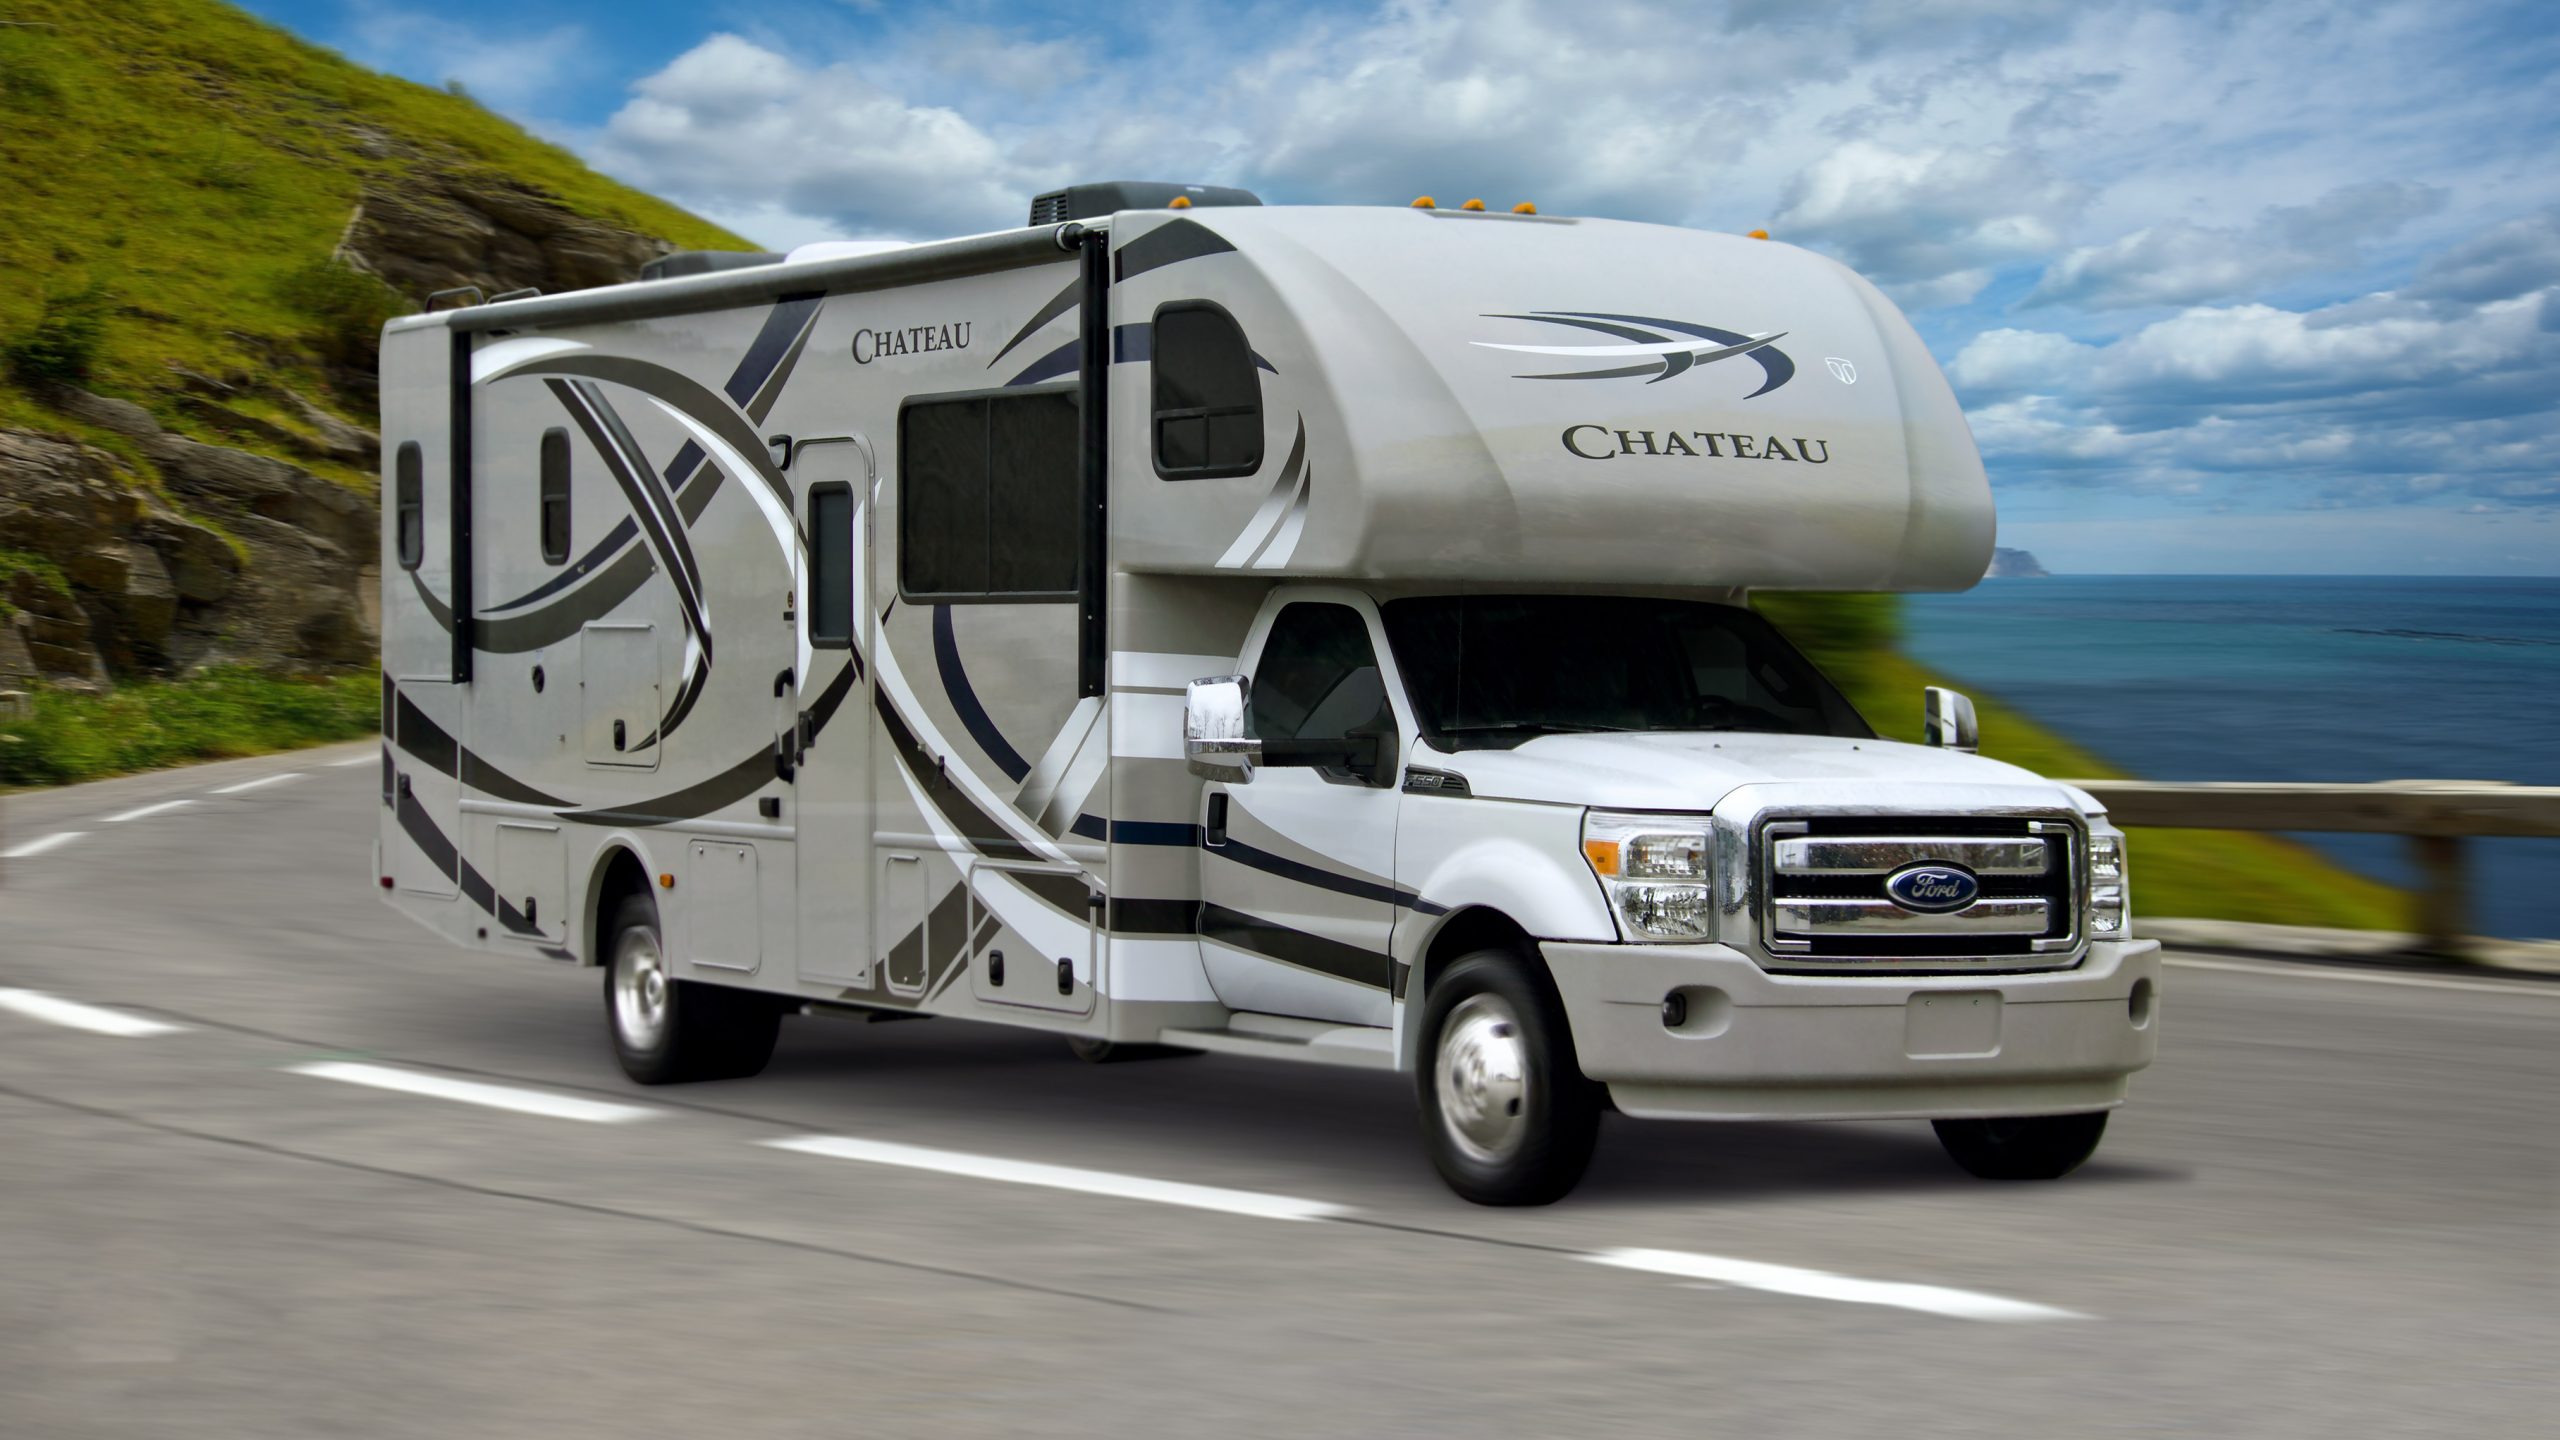 Comment importer un véhicule récréatif (VR) et camping-car des États-Unis